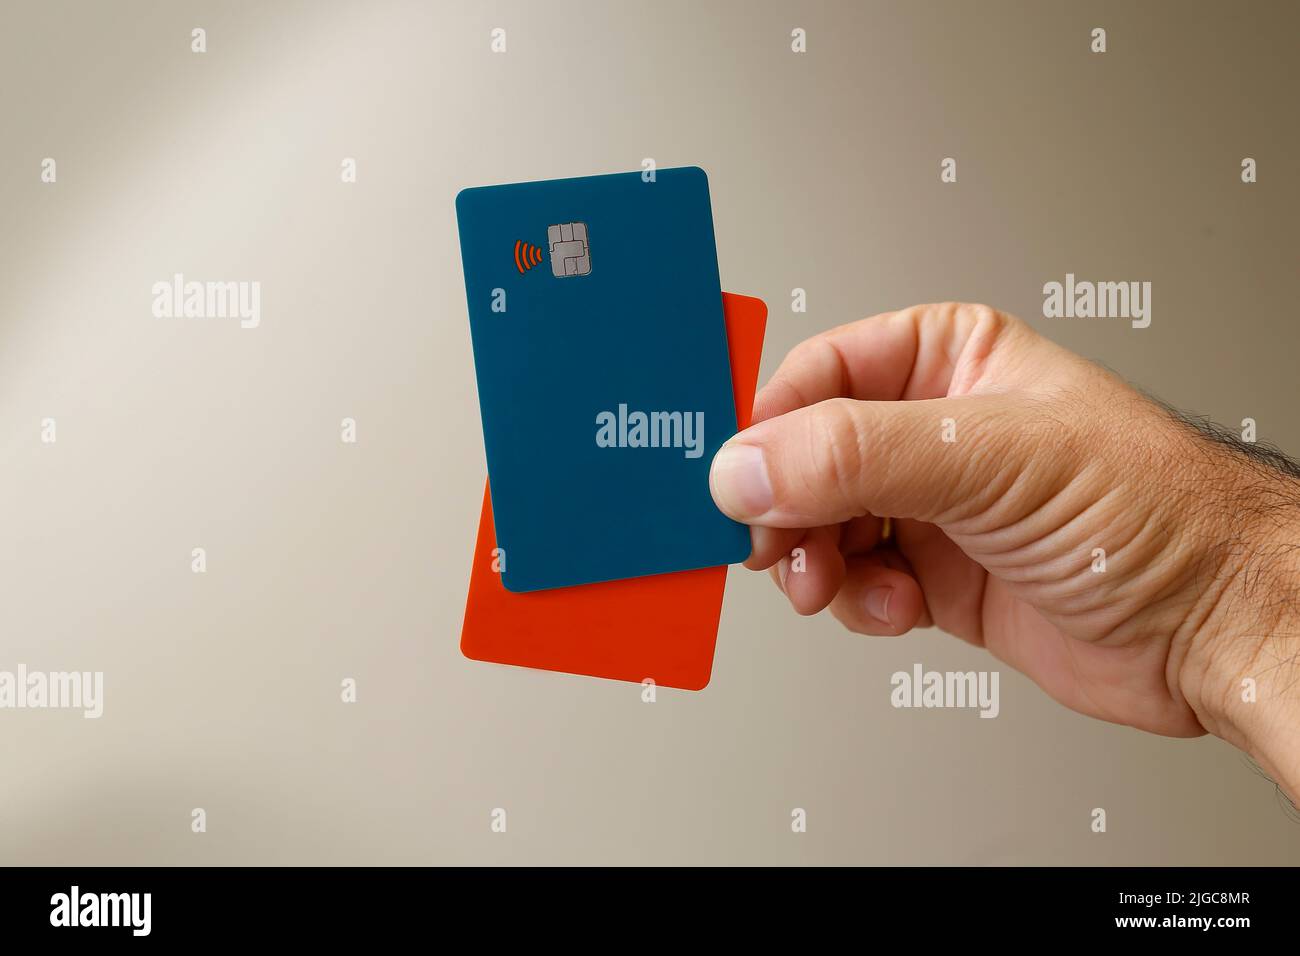 tarjetas de crédito o débito sin contacto verde y naranja con signo de no contacto. Sistema de pago digital. Foto de stock